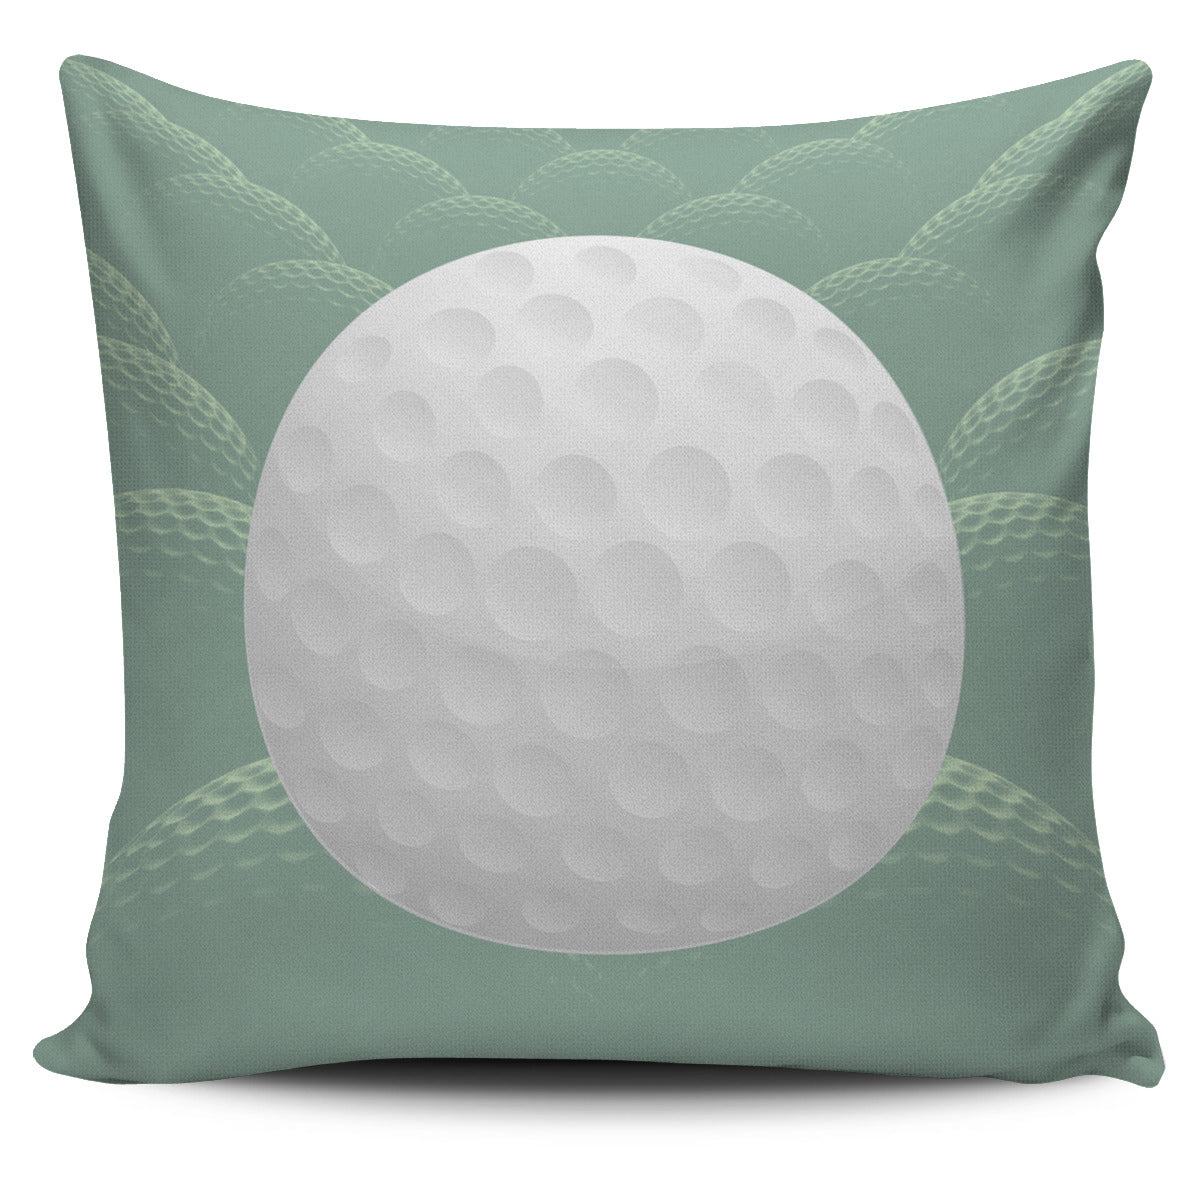 Golf Ball Pillow Cover